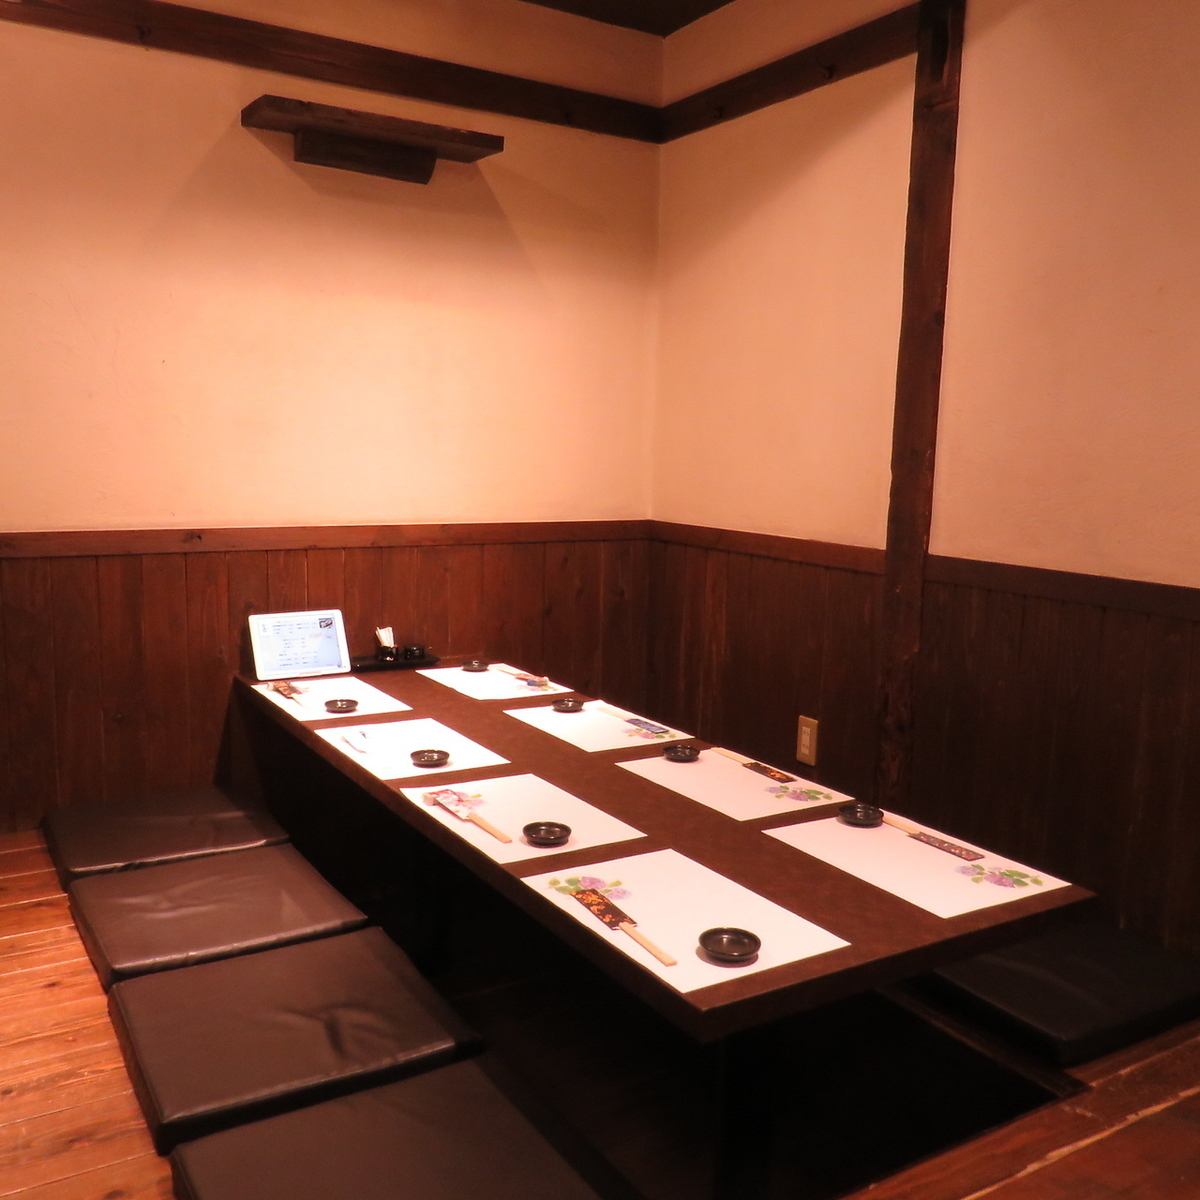 我们准备了一个最多可容纳30人的安静氛围的hori-kotatsu座位。